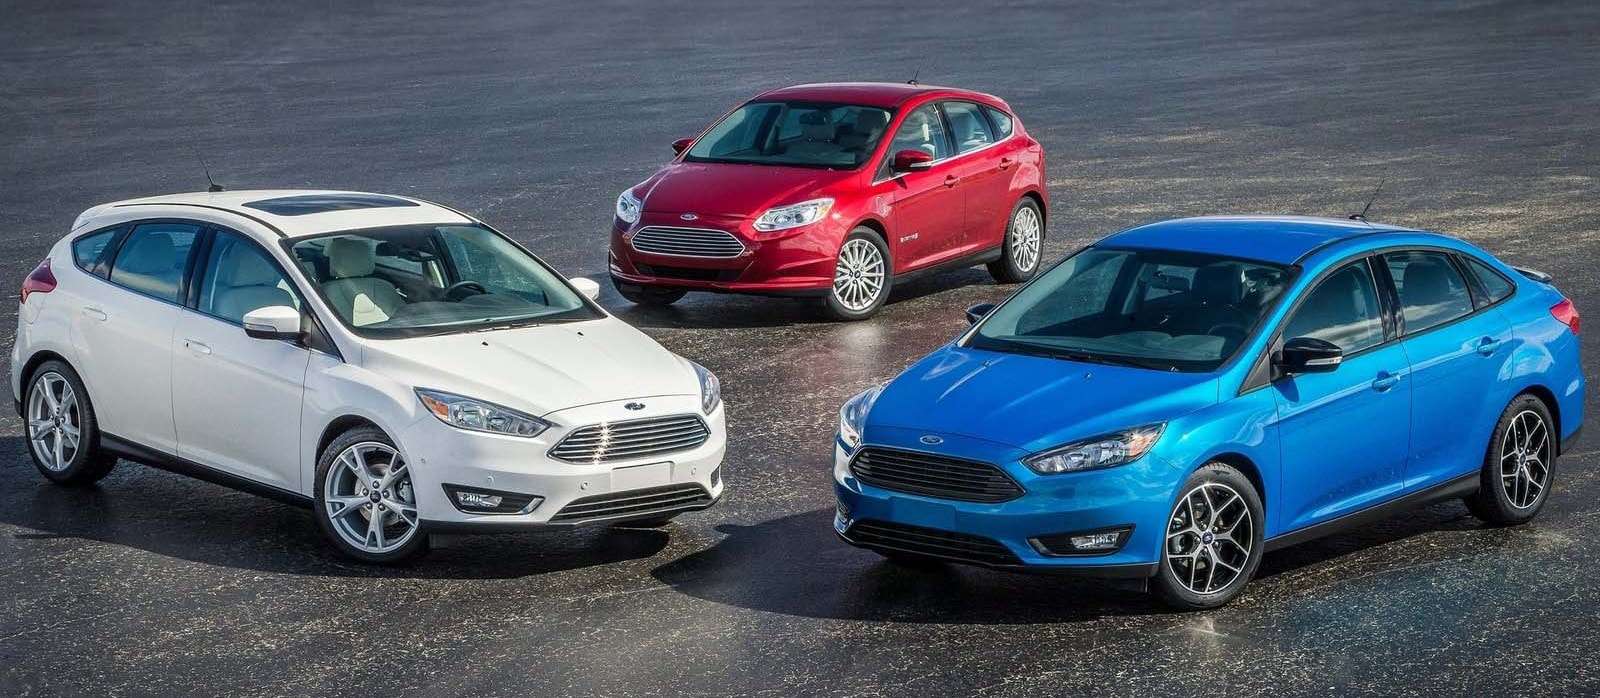 Автомобиль Ford Focus - Отражение Ваших возможностей | Автомобильный портал